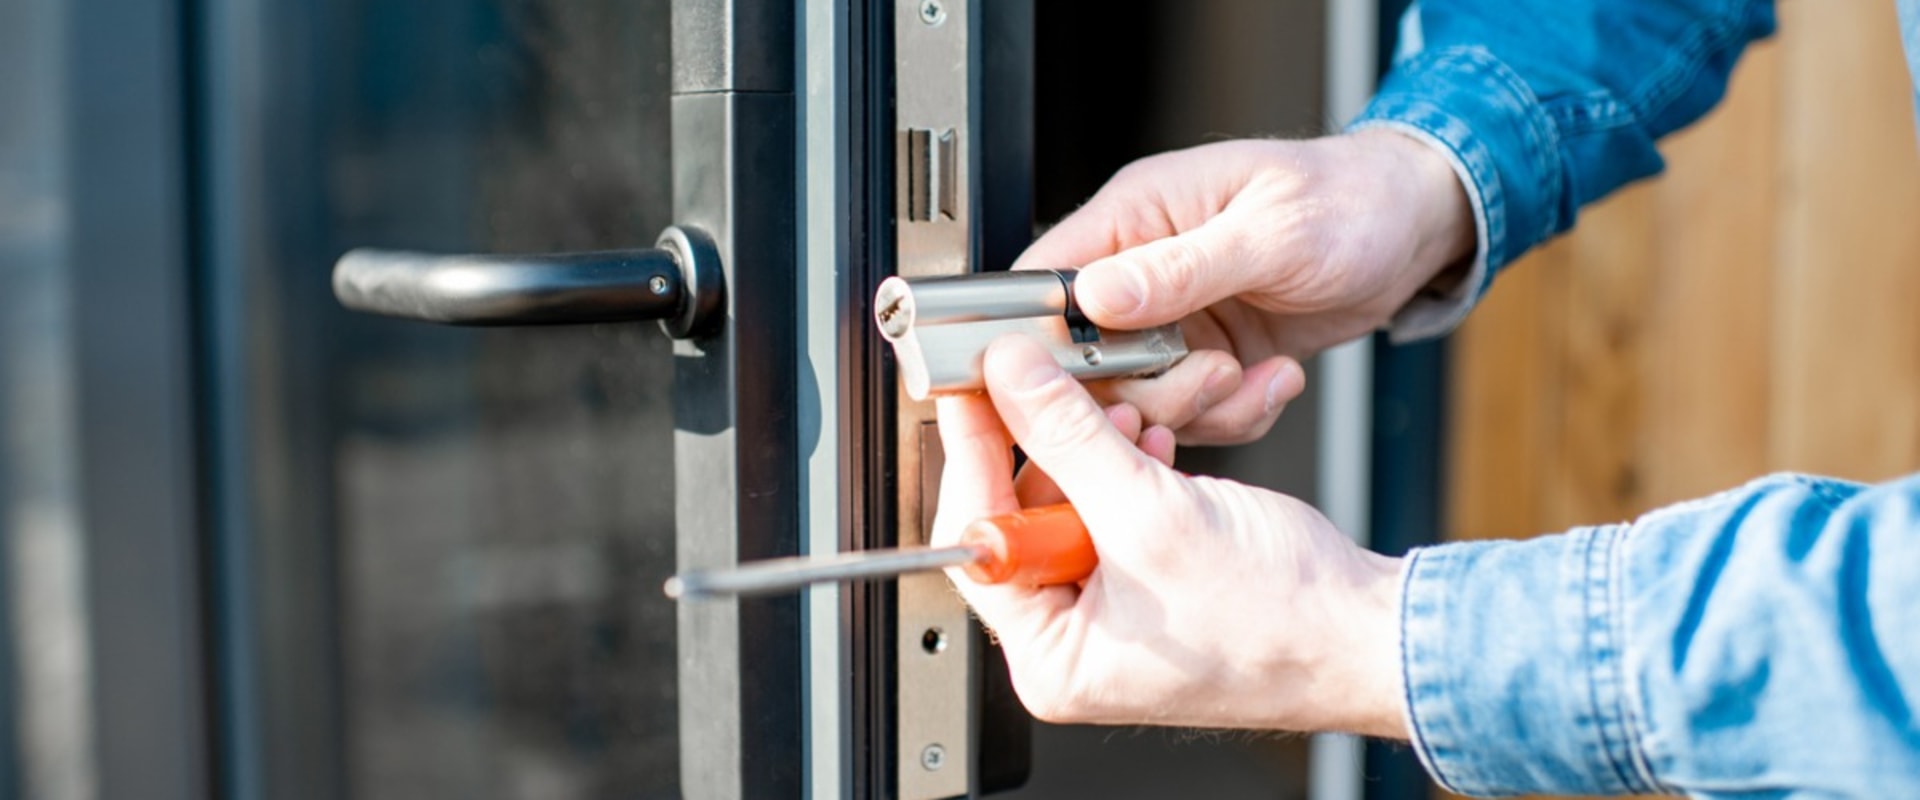 Why use locksmithing?